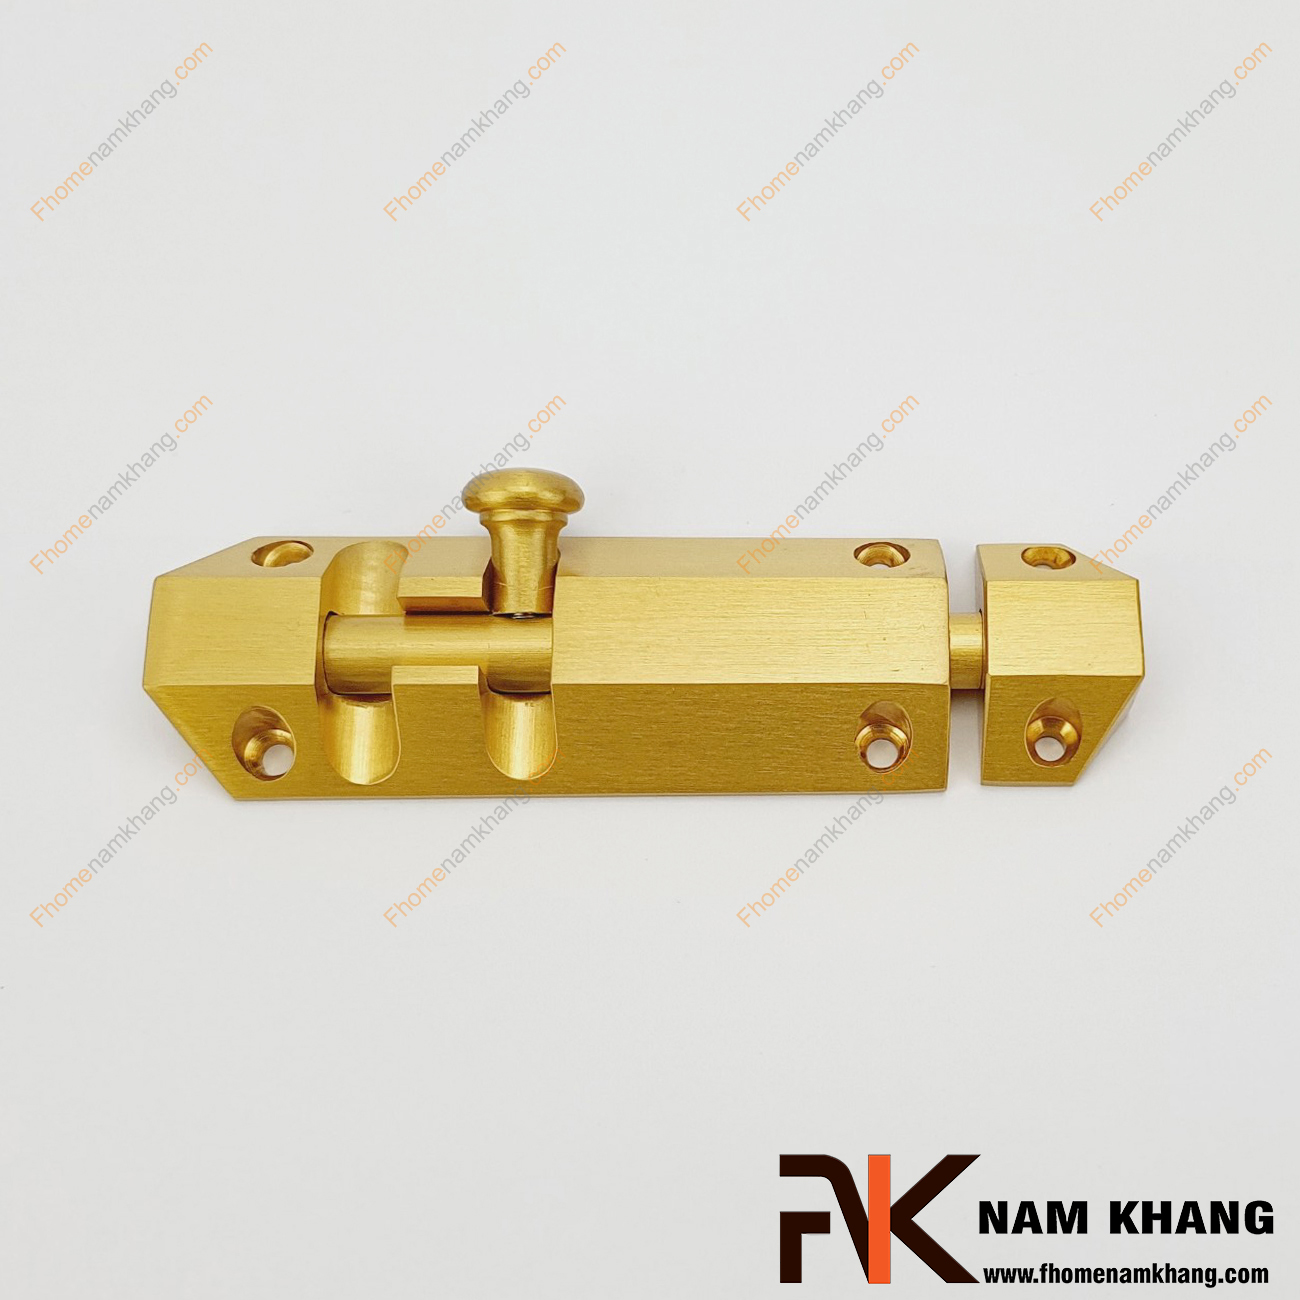 Chốt cửa cao cấp màu đồng vàng NKD082-DV là một bộ phận không thể thiếu trên cánh cửa, giúp tránh những tác nhân xấu ở bên ngoài, tăng độ vững chắc của cánh cửa khi bị tác động lực mạnh.